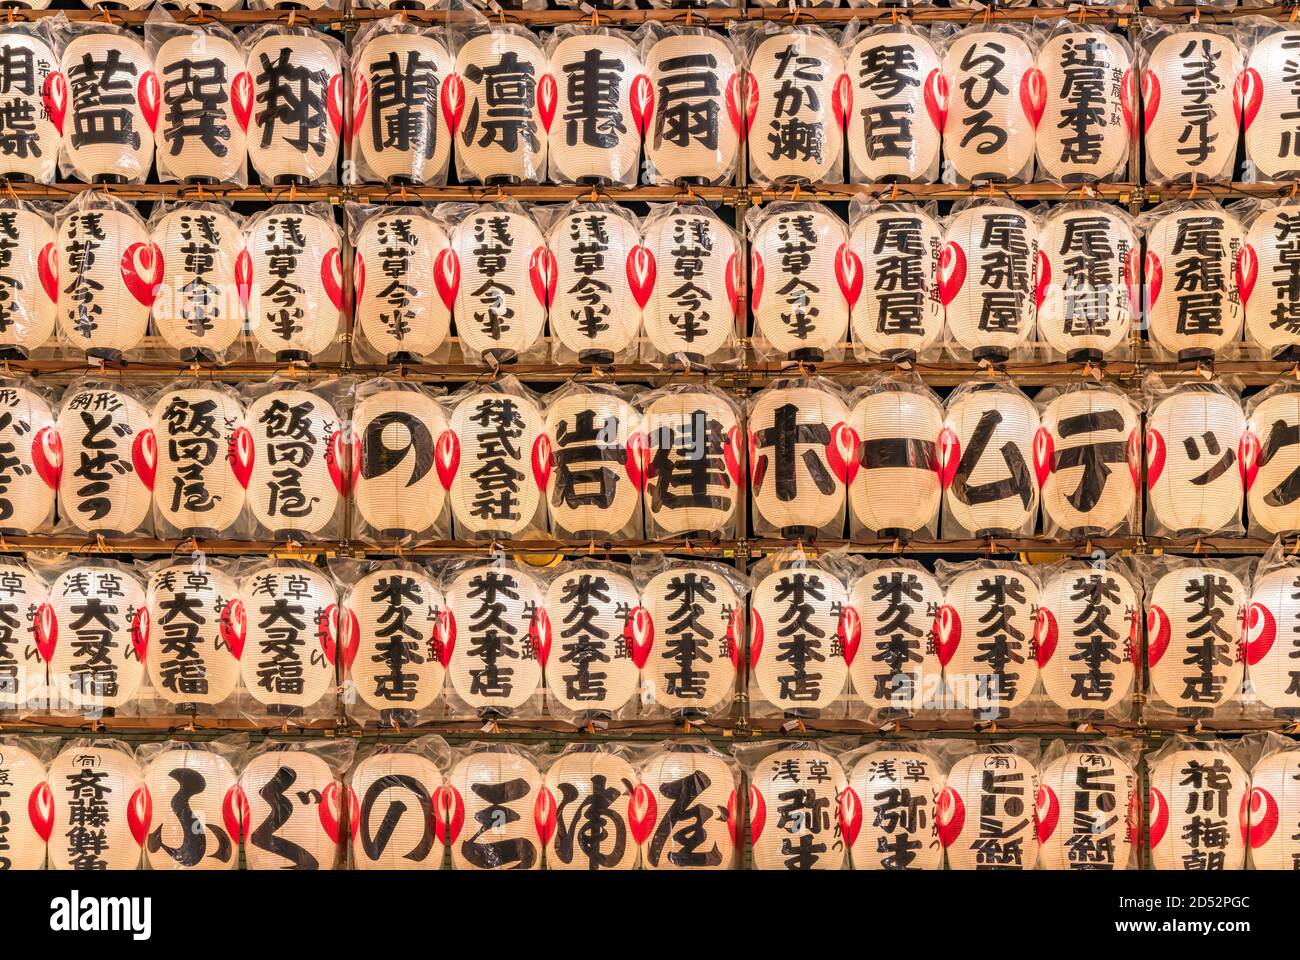 asakusa, giappone - novembre 08 2019: Primo piano di un'enorme parete di lanterne di carta giapponesi luminose decorate con i nomi scritti a mano di patroni e spo Foto Stock